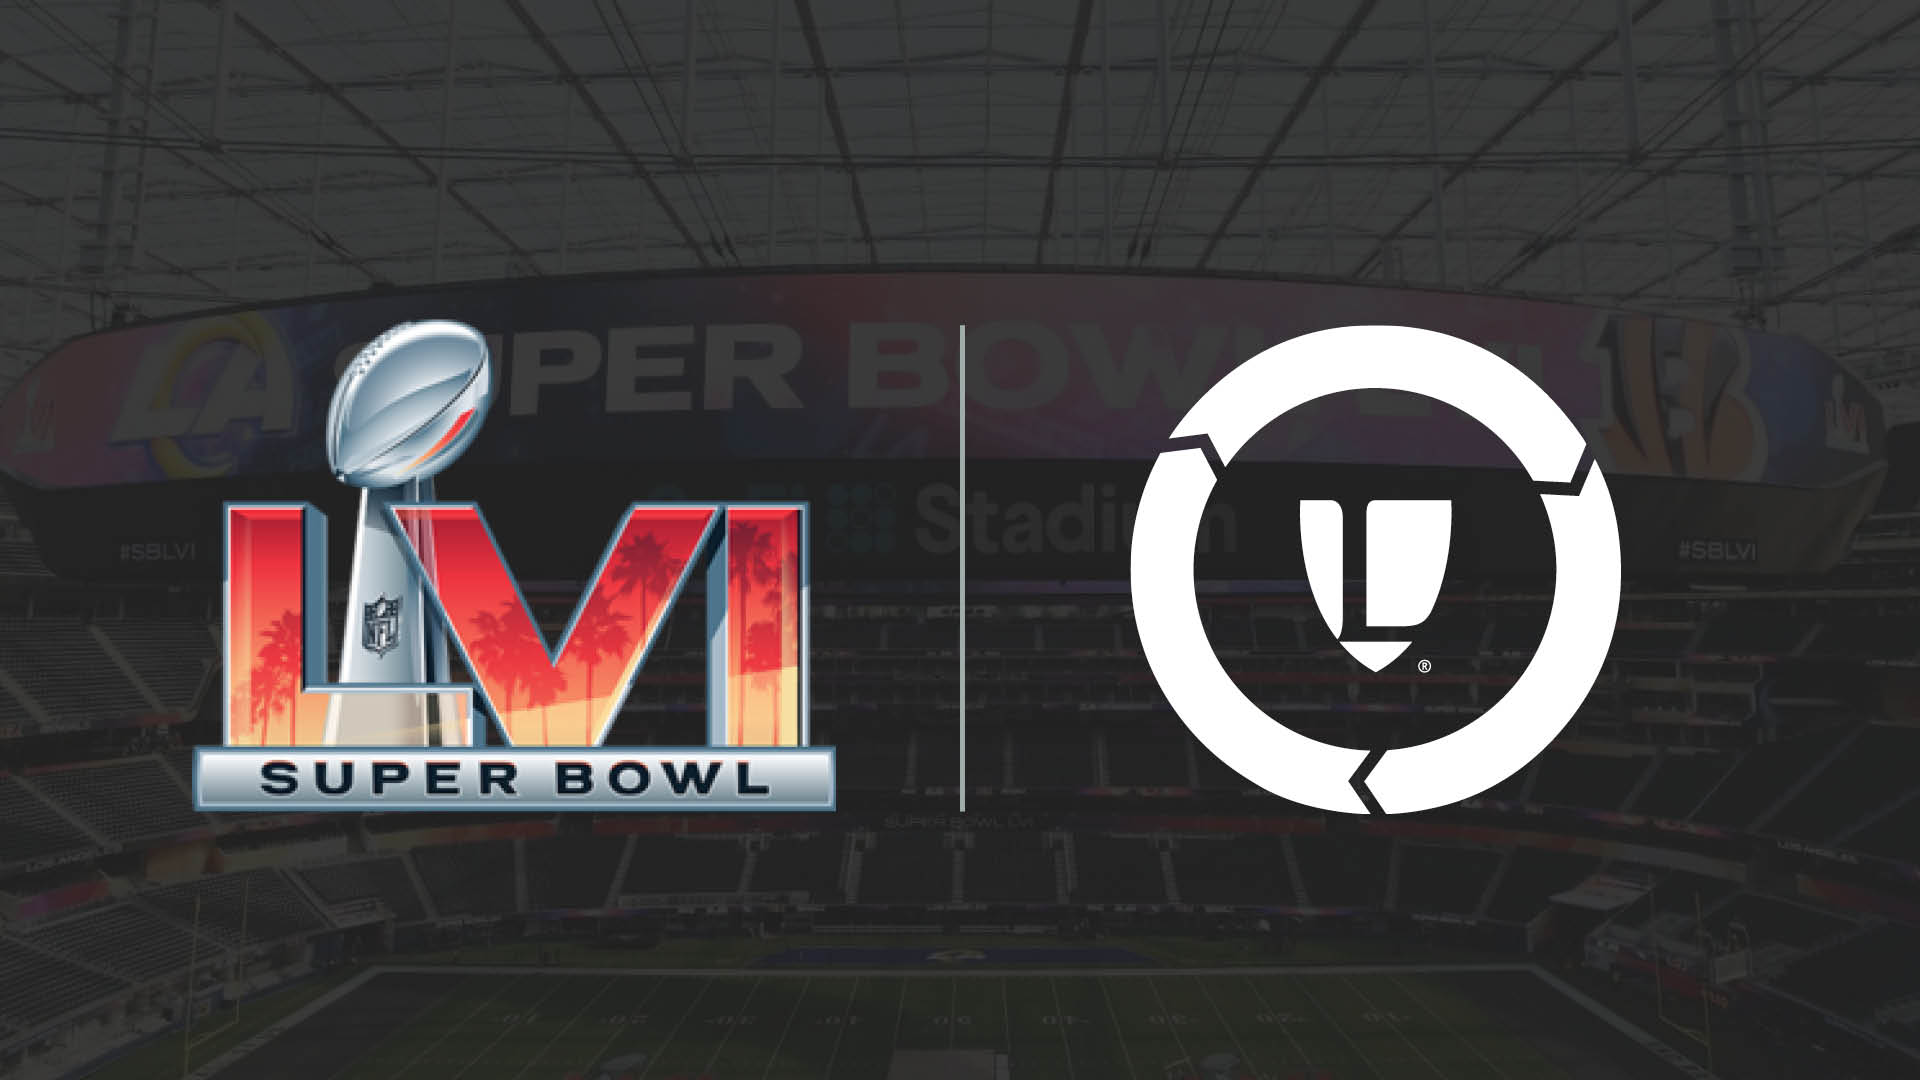 Legends Announces Record-Breaking Sales for Super Bowl LVI at SoFi Stadium